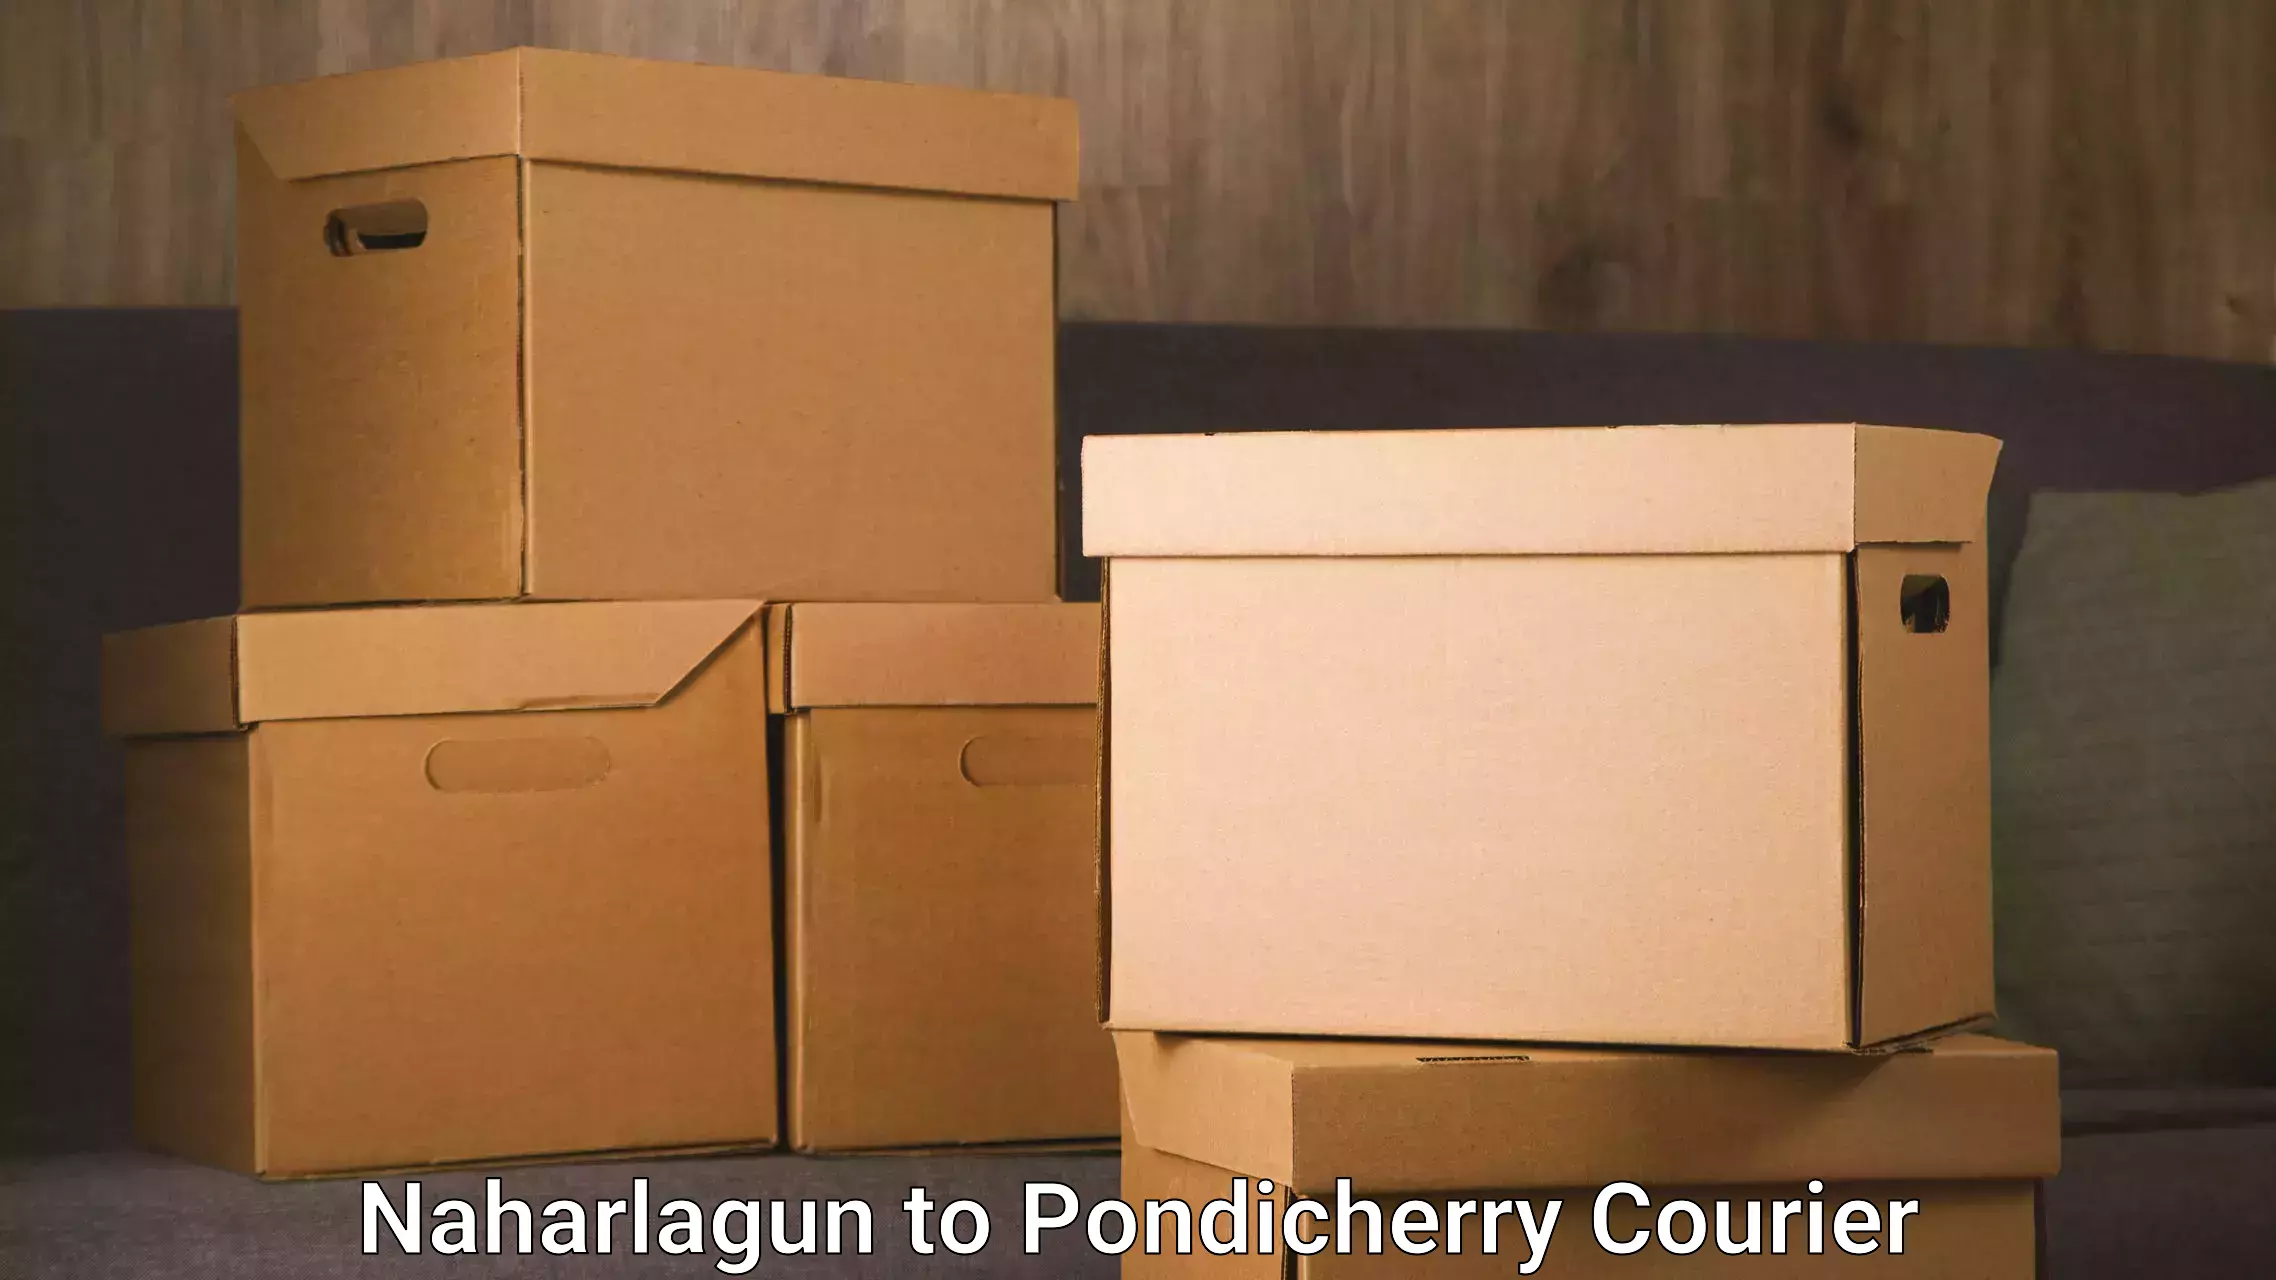 Enhanced tracking features Naharlagun to Pondicherry